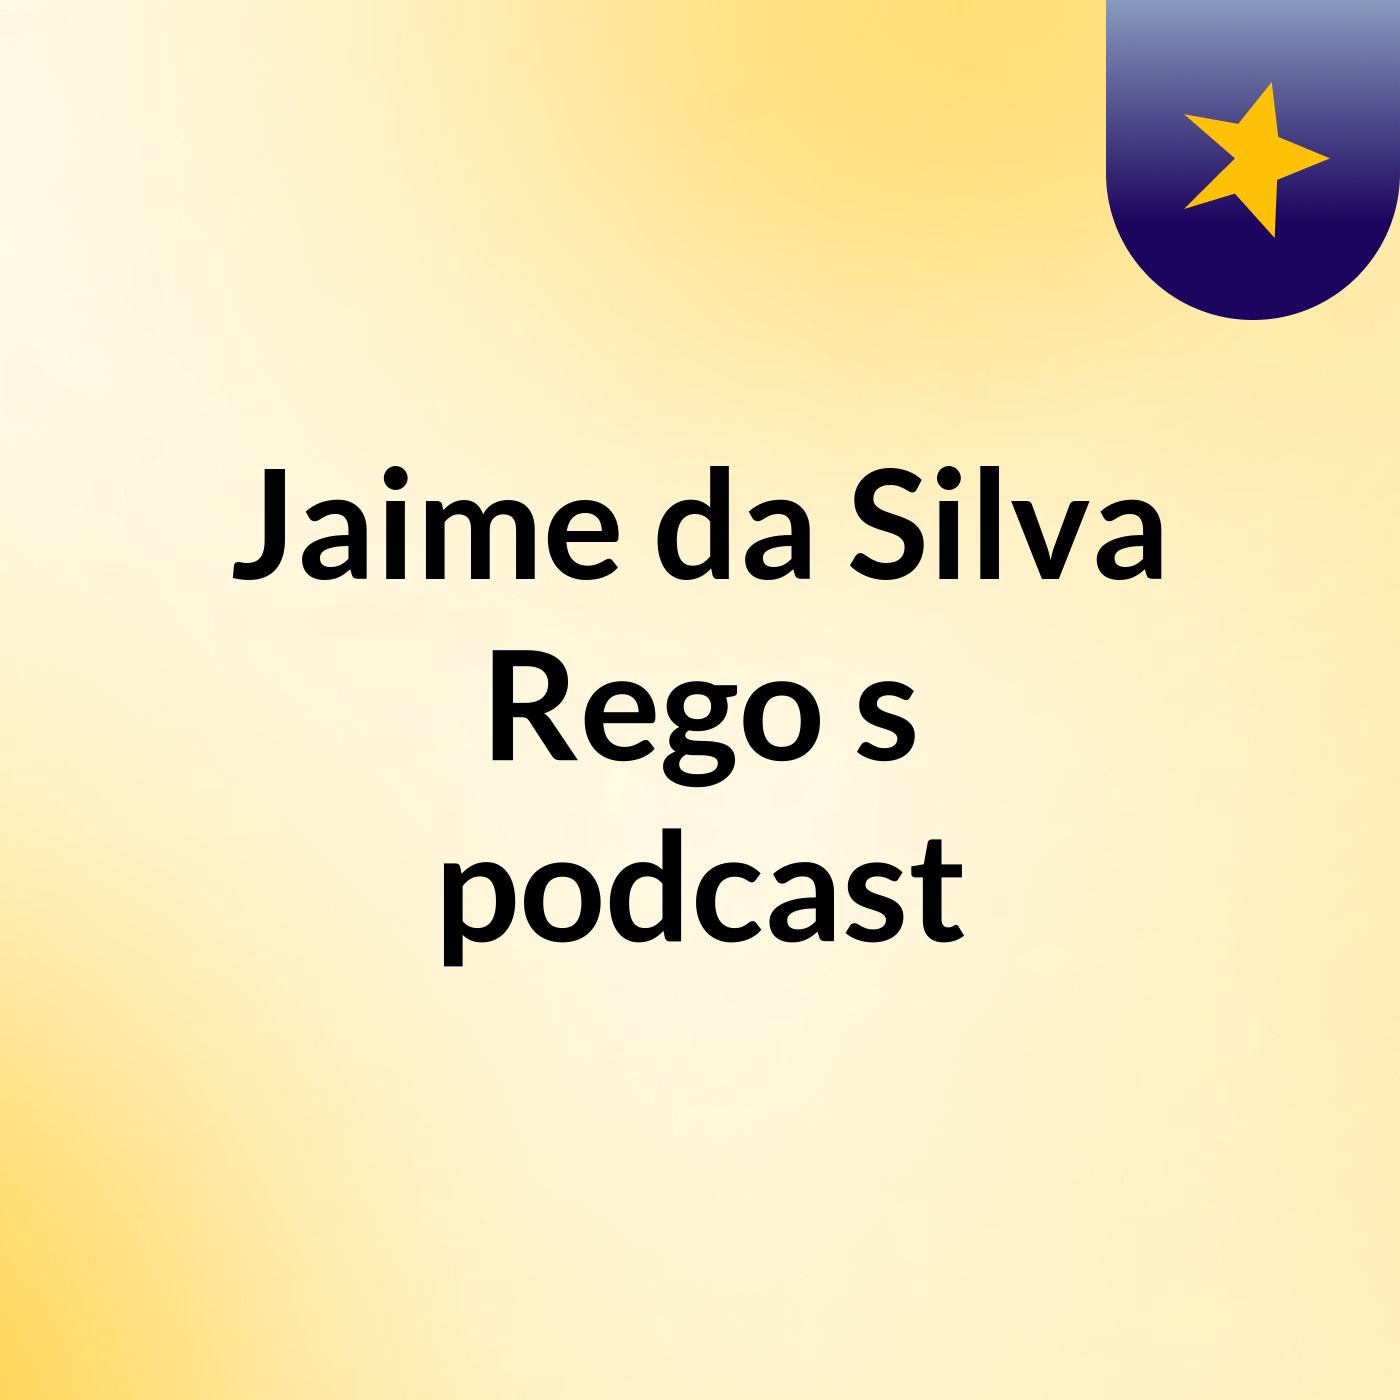 Jaime da Silva Rego's podcast